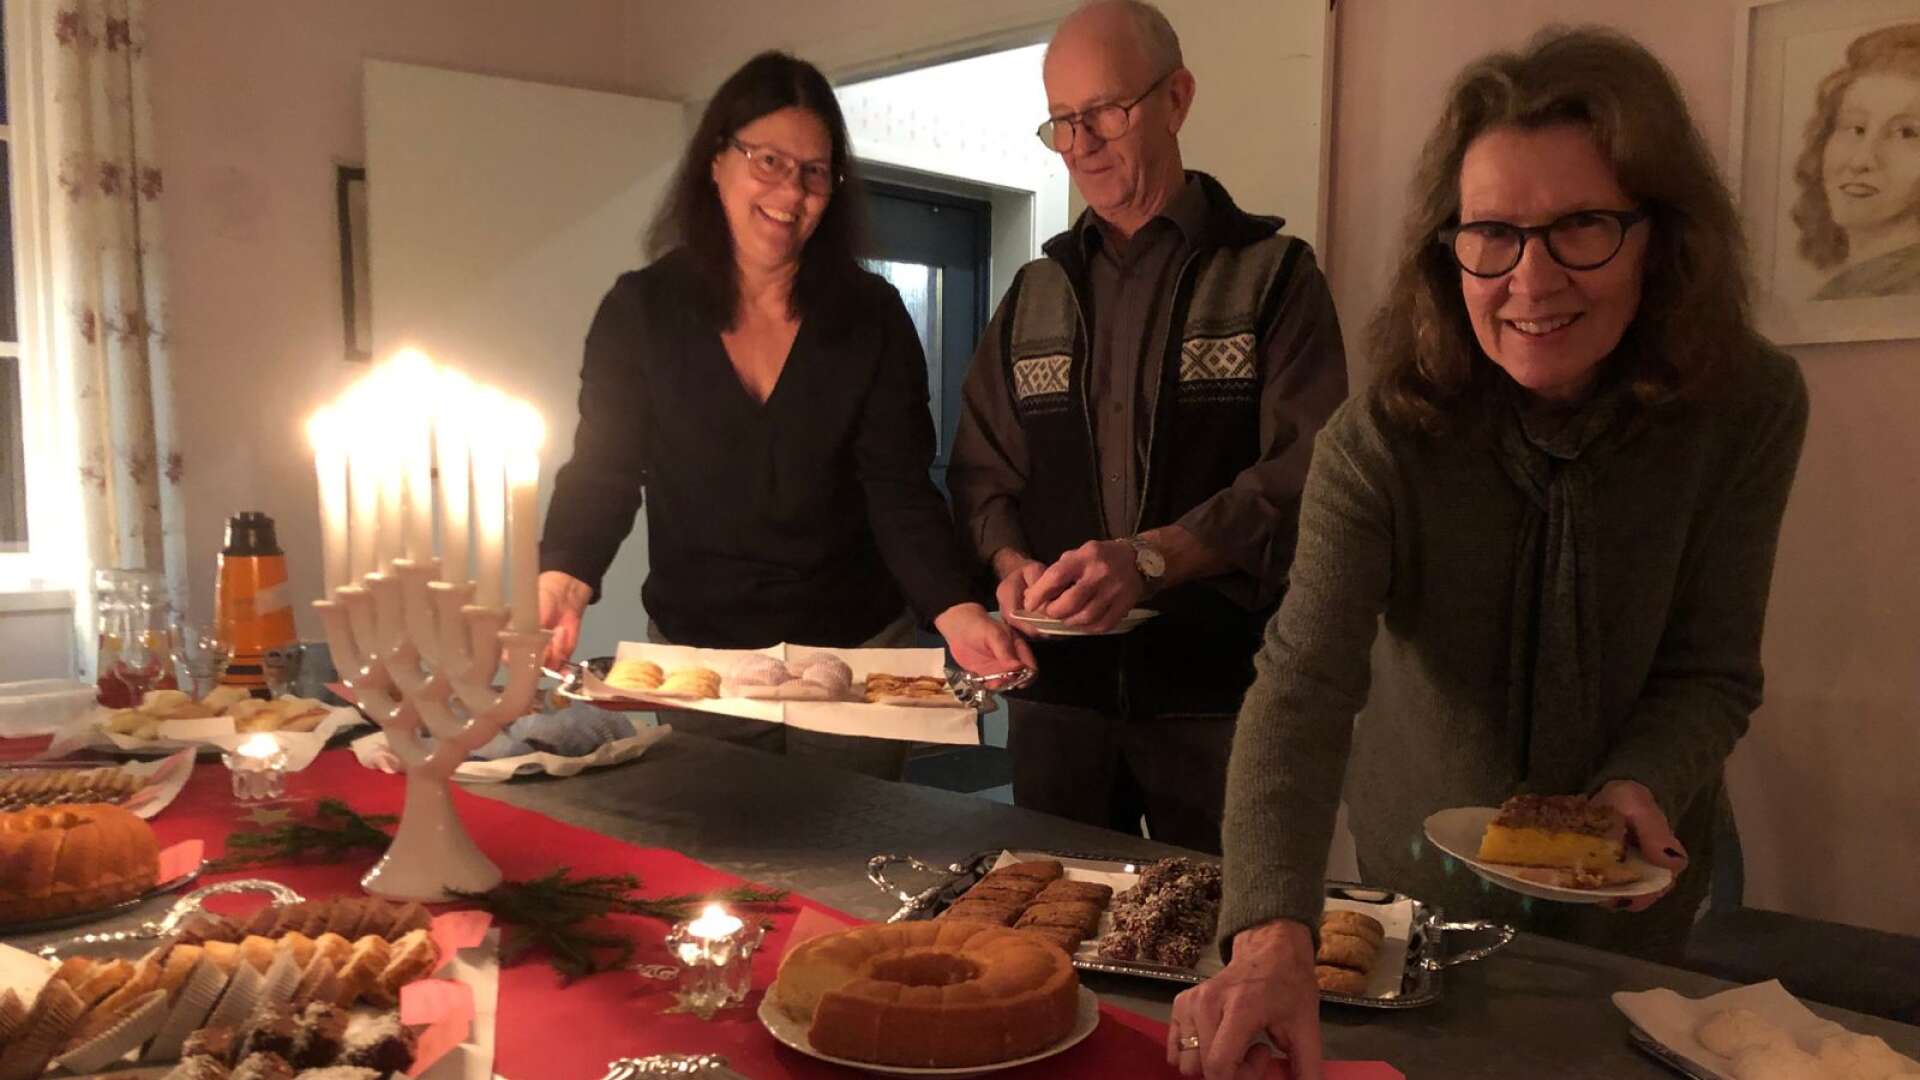 Kafferepet i Ingmår har blivit en tradition. Här kommer Anne-Marie Carlsson, Ingmårs bygdeförening med ett nytt fat med kakor till nykomna gäster.